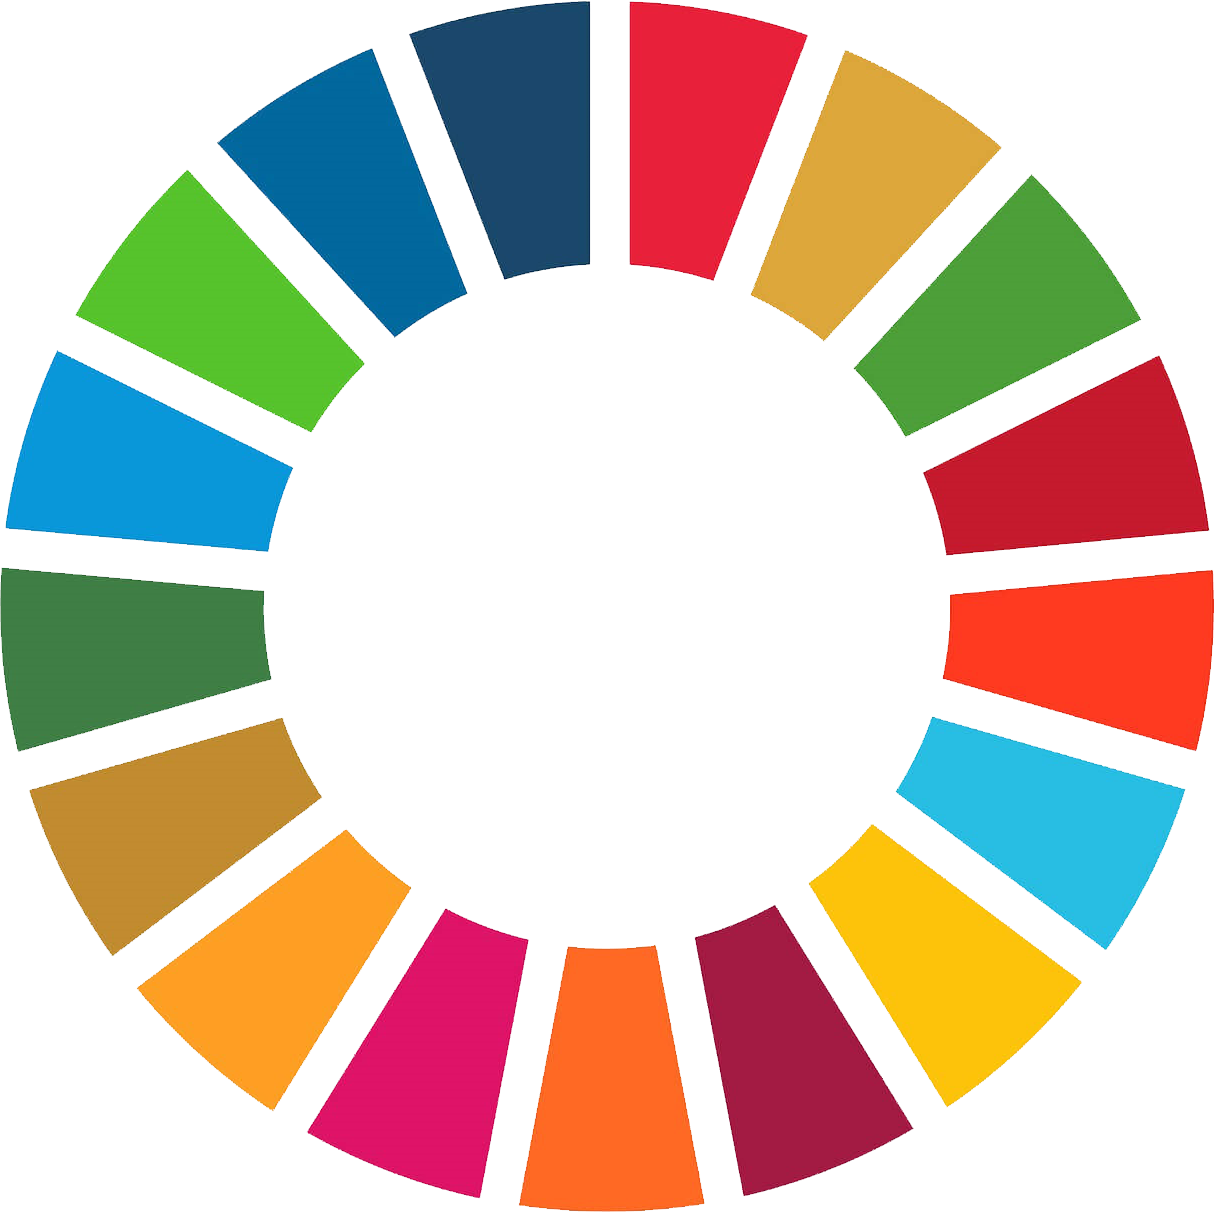 global goals for sustainable development FNS 17 verdensmål